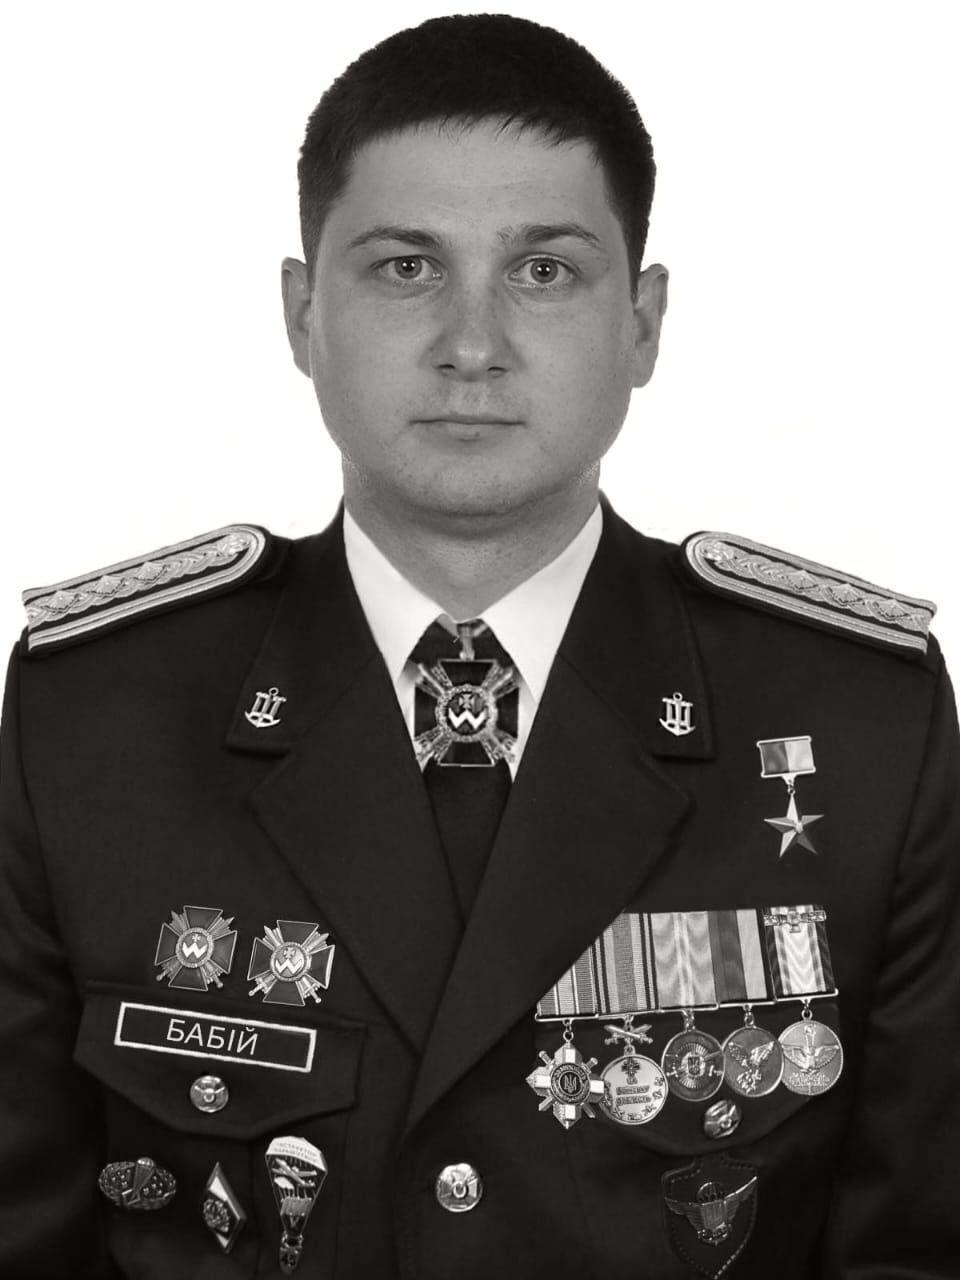 Дев’ять виходів у тил РФ, три знищені Ту-22М3: ГУР вразило історією полеглого Героя Україні Олега Бабія